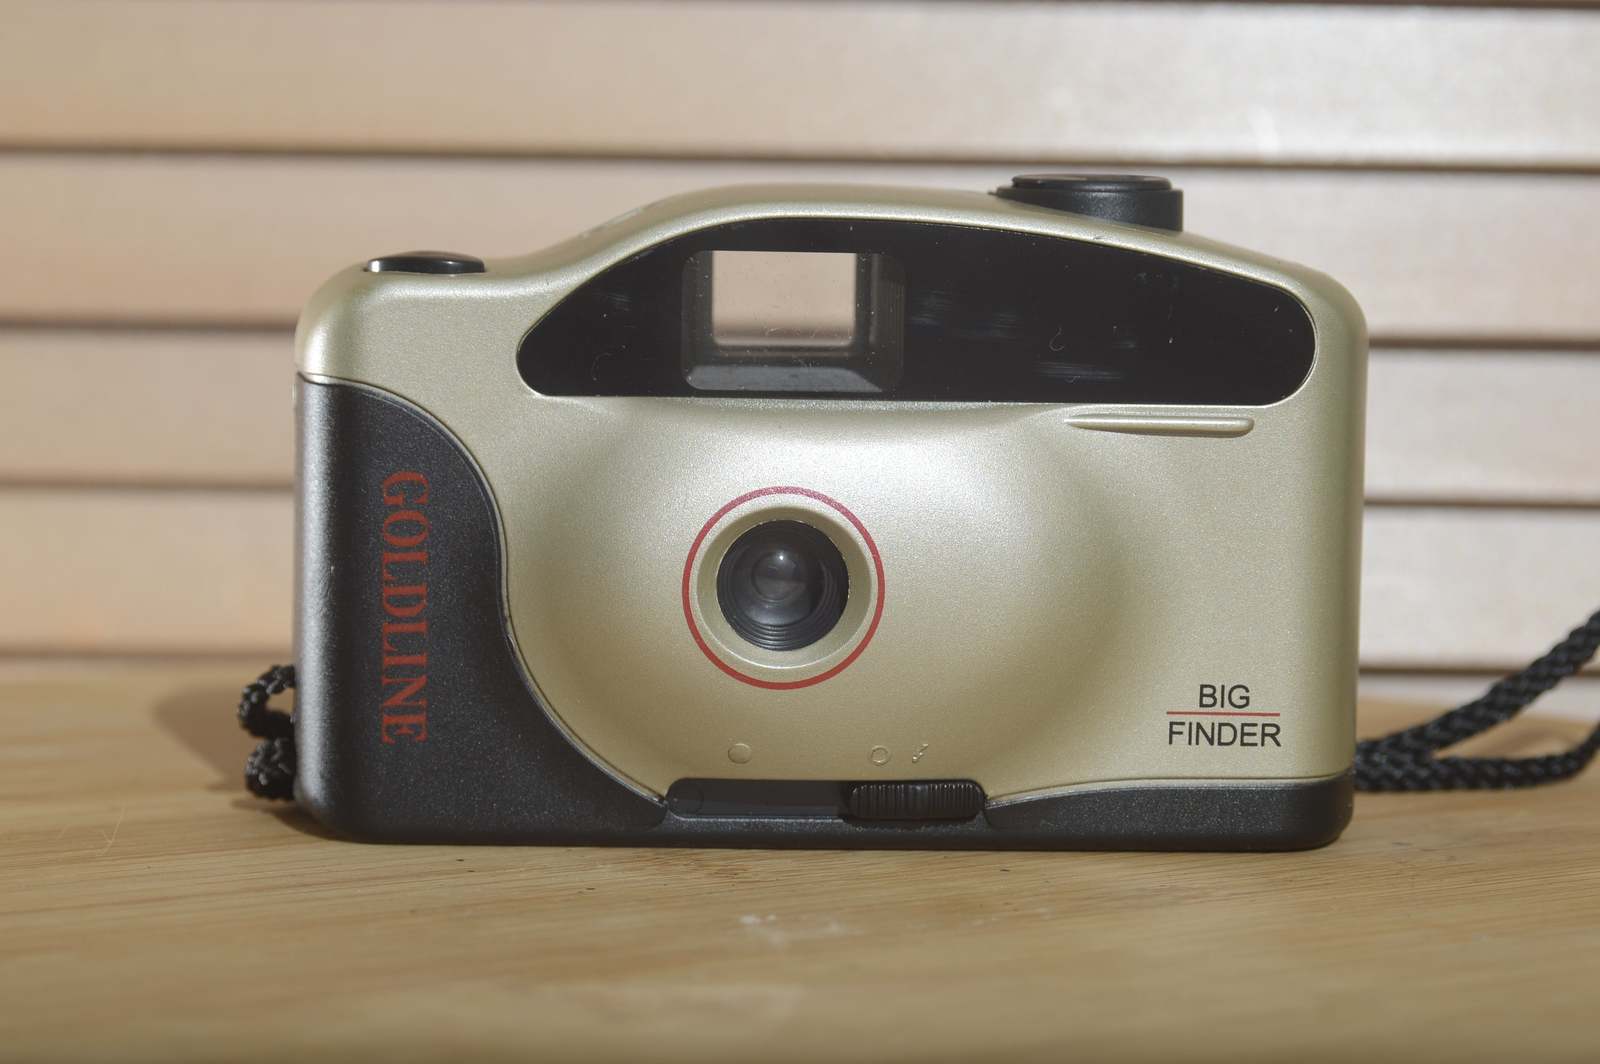 Primary image for Goldline Big Finder 35mm Compact Camera. Fantastic vintage point and shoot.